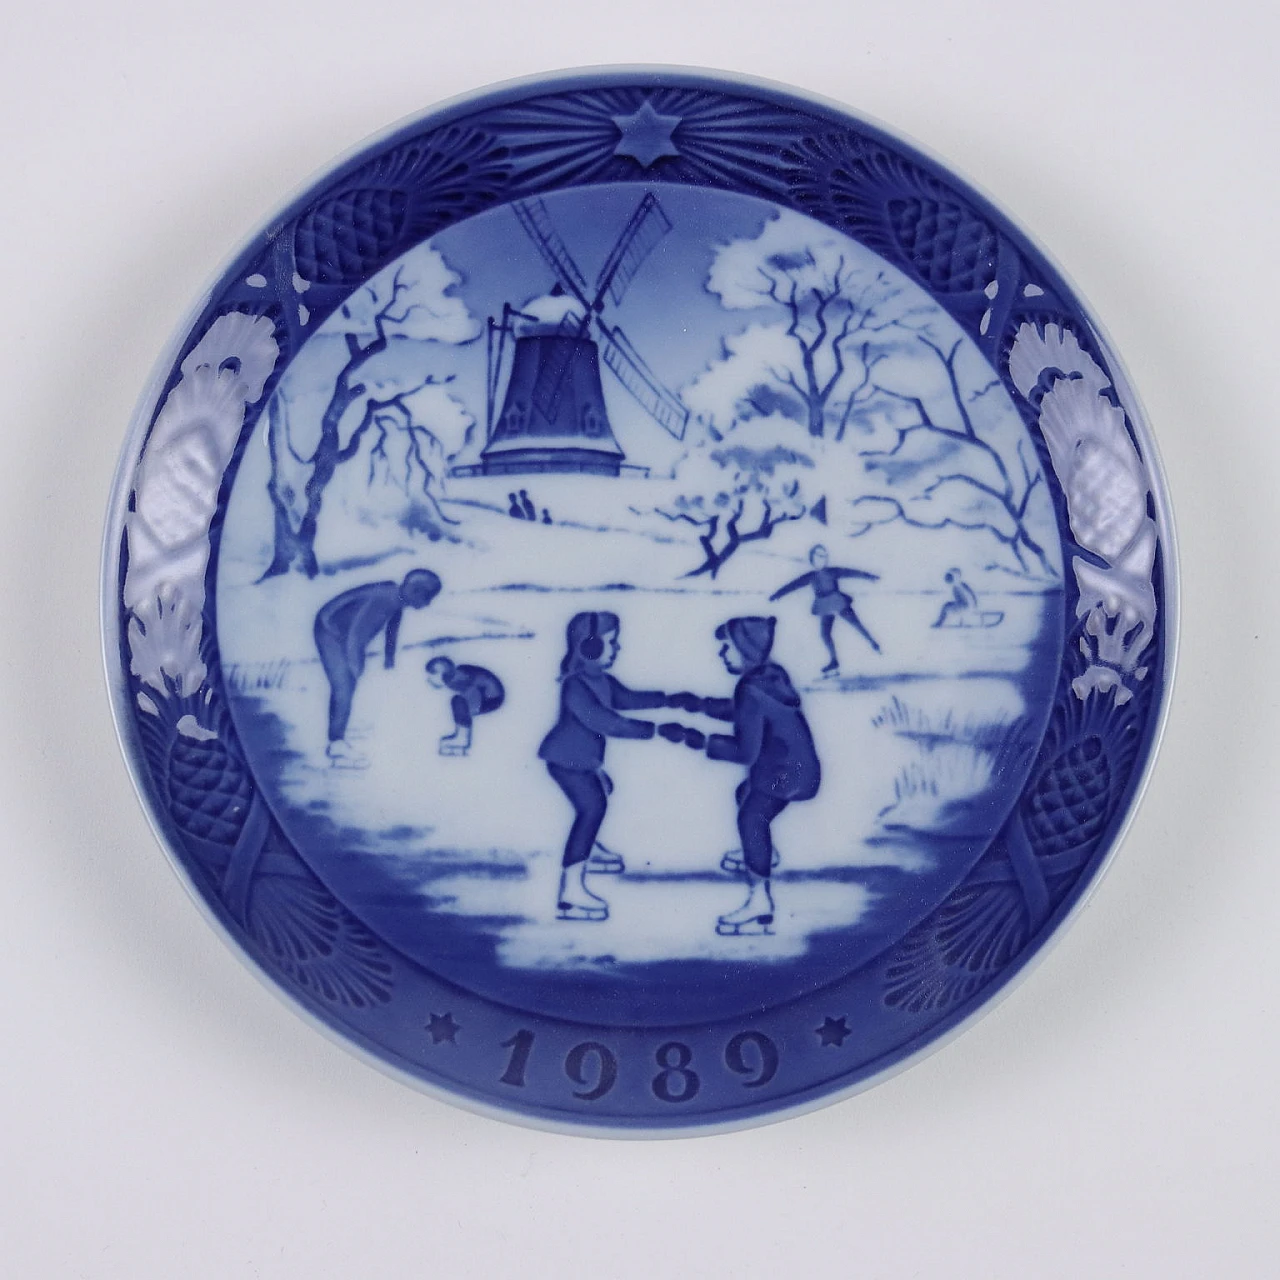 20 Blue porcelain plates by Royal Copenhagen 3